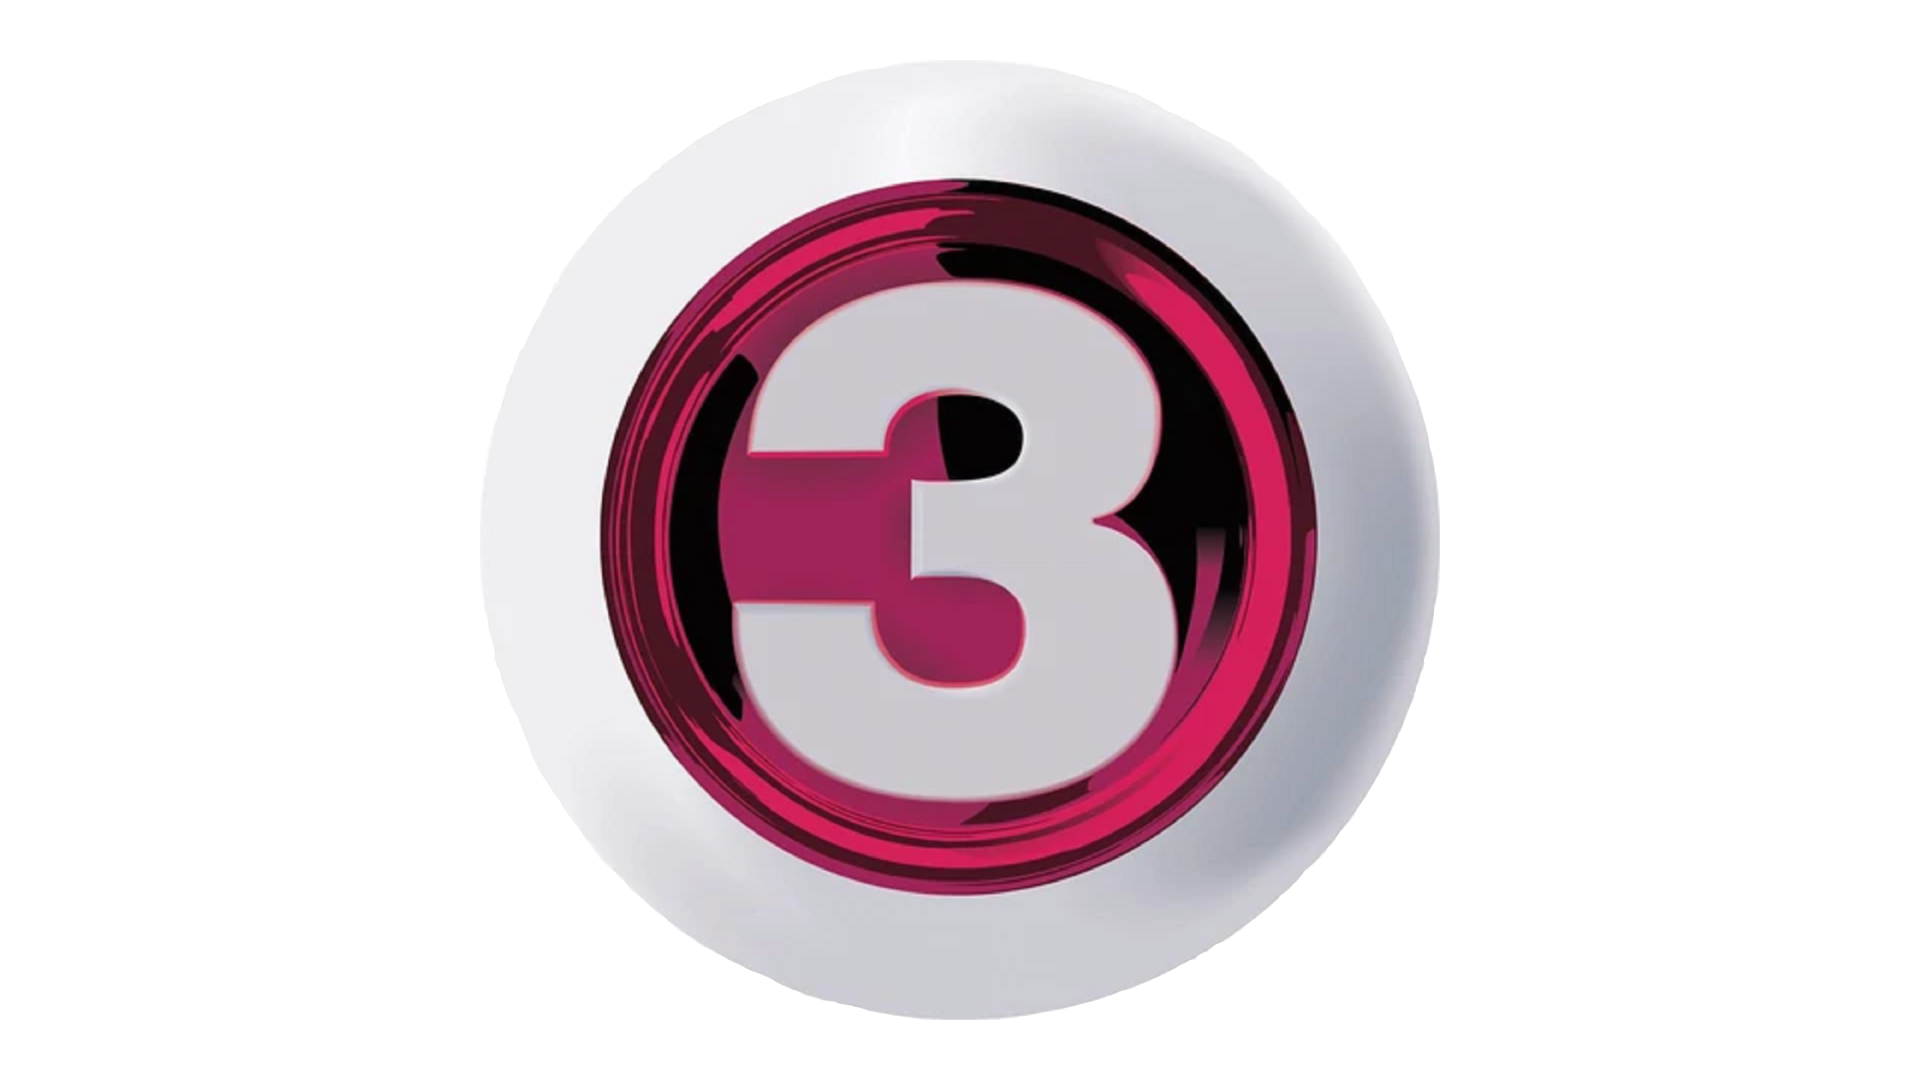 Tv3 3. Tv3 Viasat. Viasat-3. Viasat логотип ТВ. Телеканалы Дании.